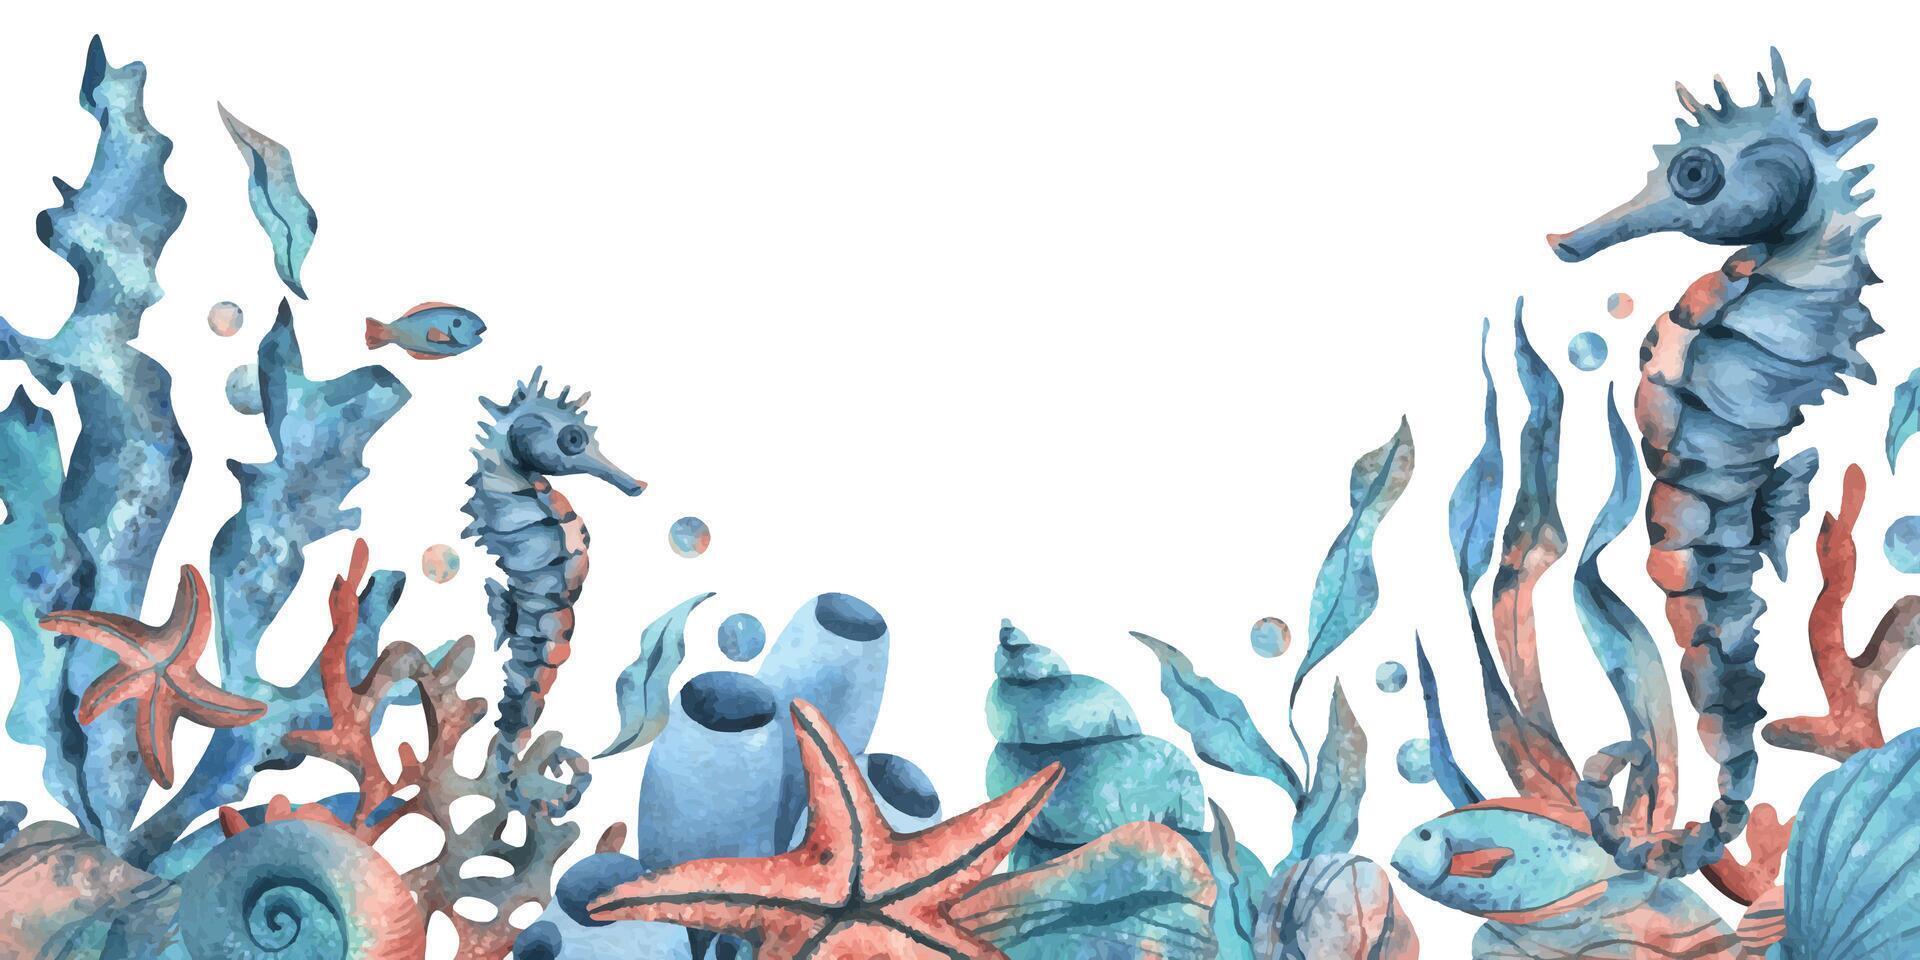 onderwater- wereld clip art met zee dieren walvis, schildpad, Octopus, zeepaardje, zeester, schelpen, koraal en algen. hand- getrokken waterverf illustratie. grens, sjabloon, kader geïsoleerd van de achtergrond vector